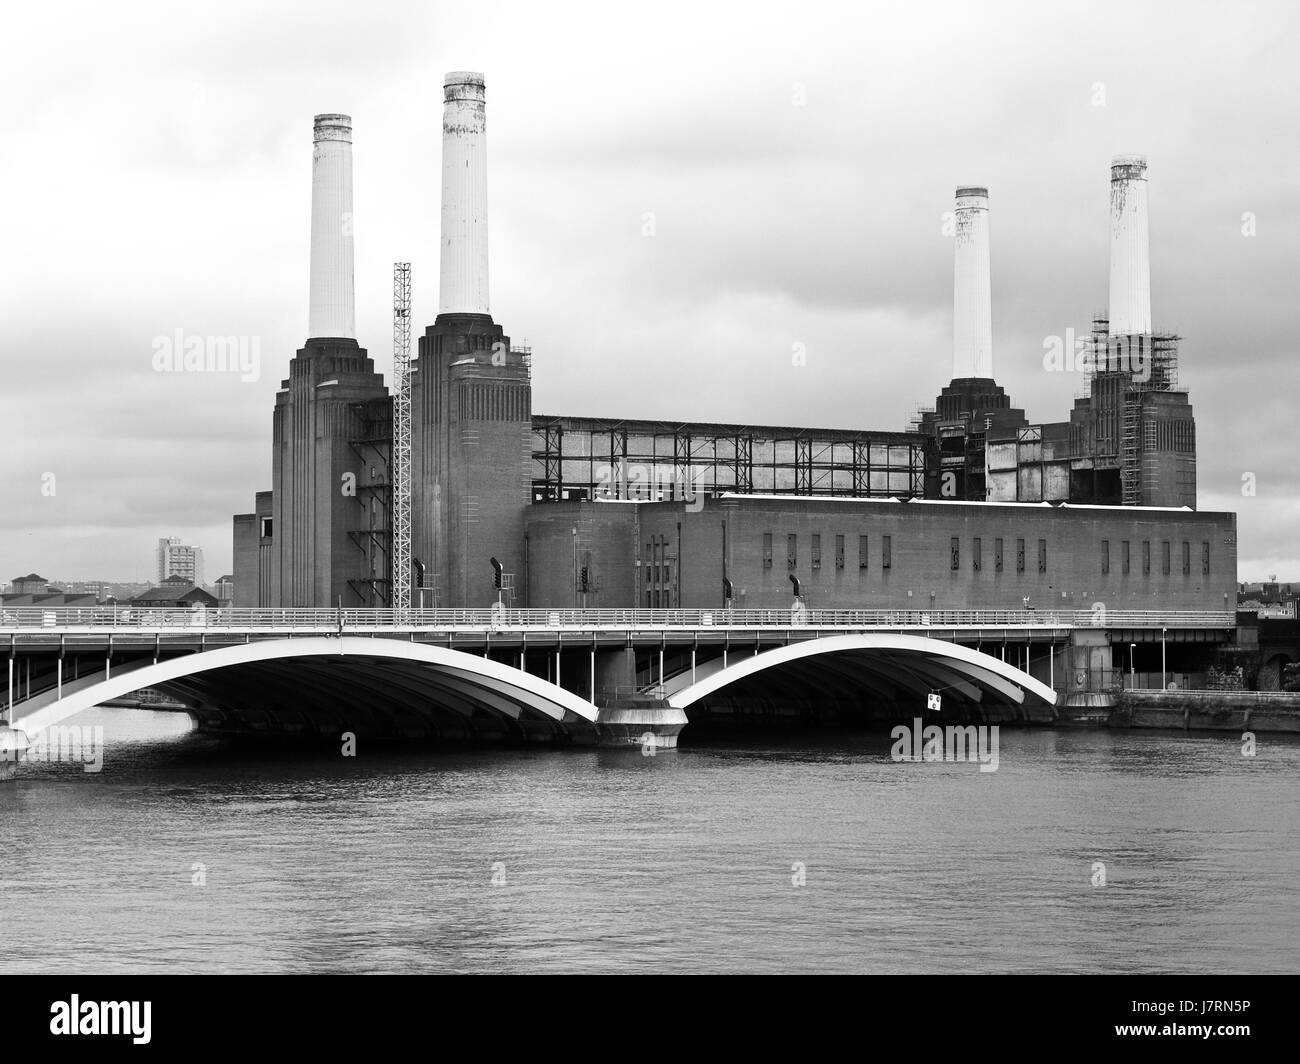 Backsteingotik Bau Architektur architektonischen Stil britischen Großbritannien Stockfoto